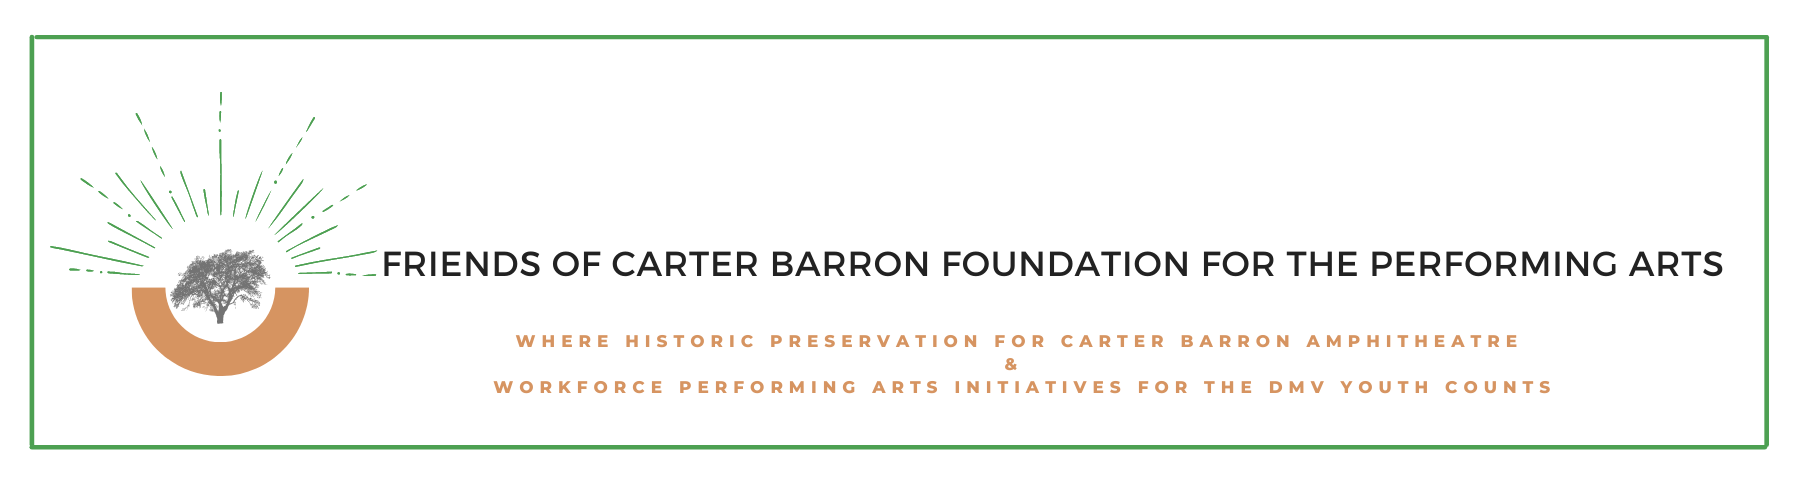 Friends of Carter Barron